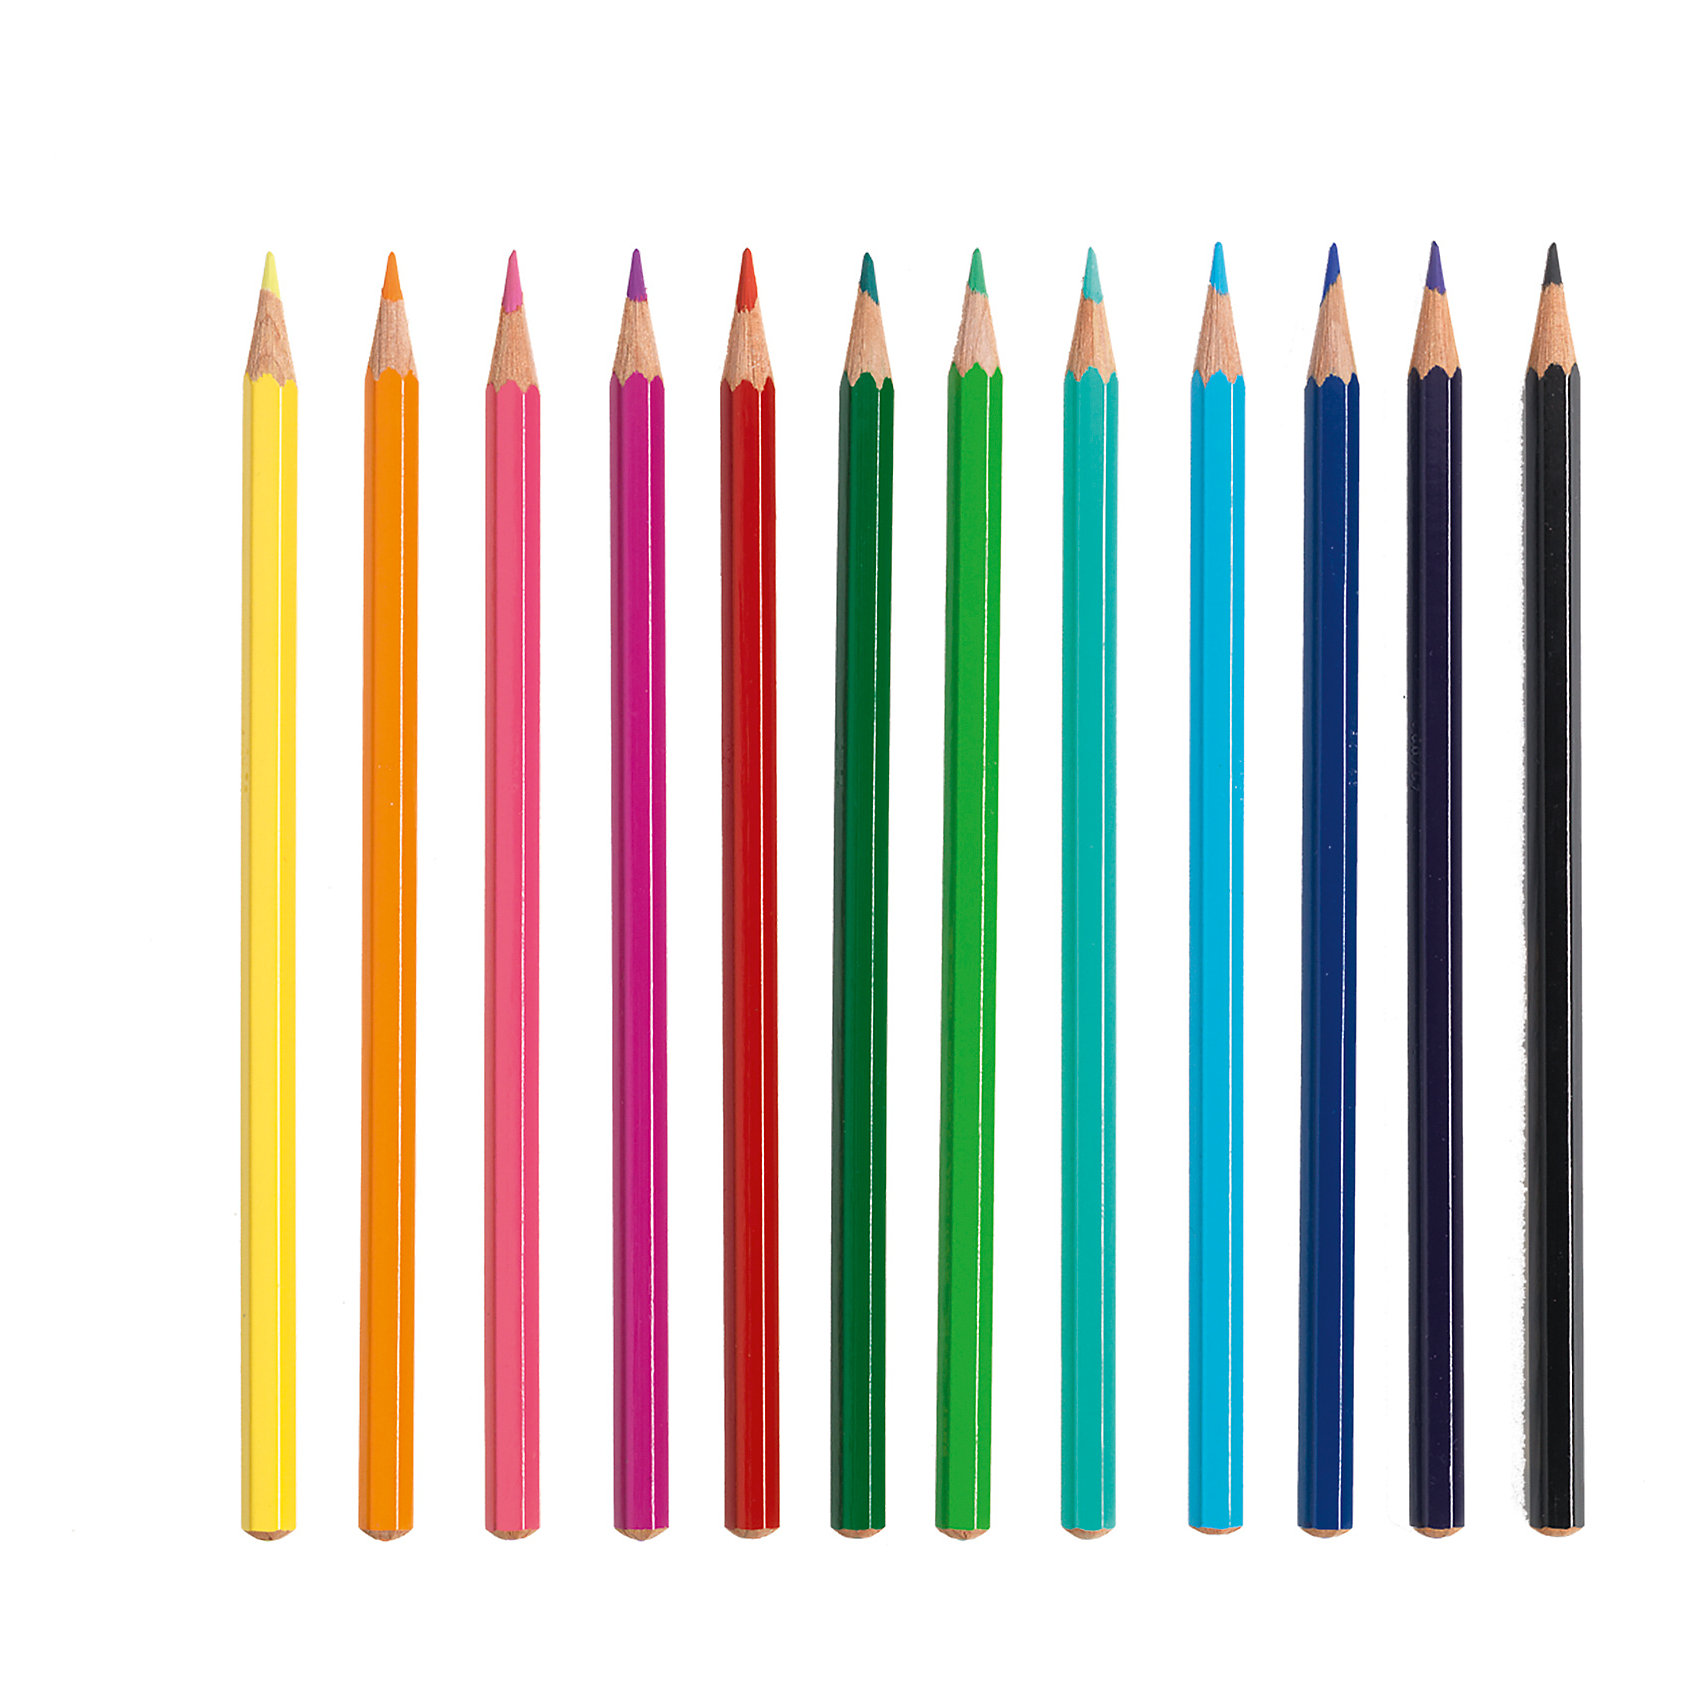 Ten pencils. Карандаши цветные 12 шт. Рисование цветными карандашами. Ребенок карандашом. Набор цветных карандашей 12 штук.